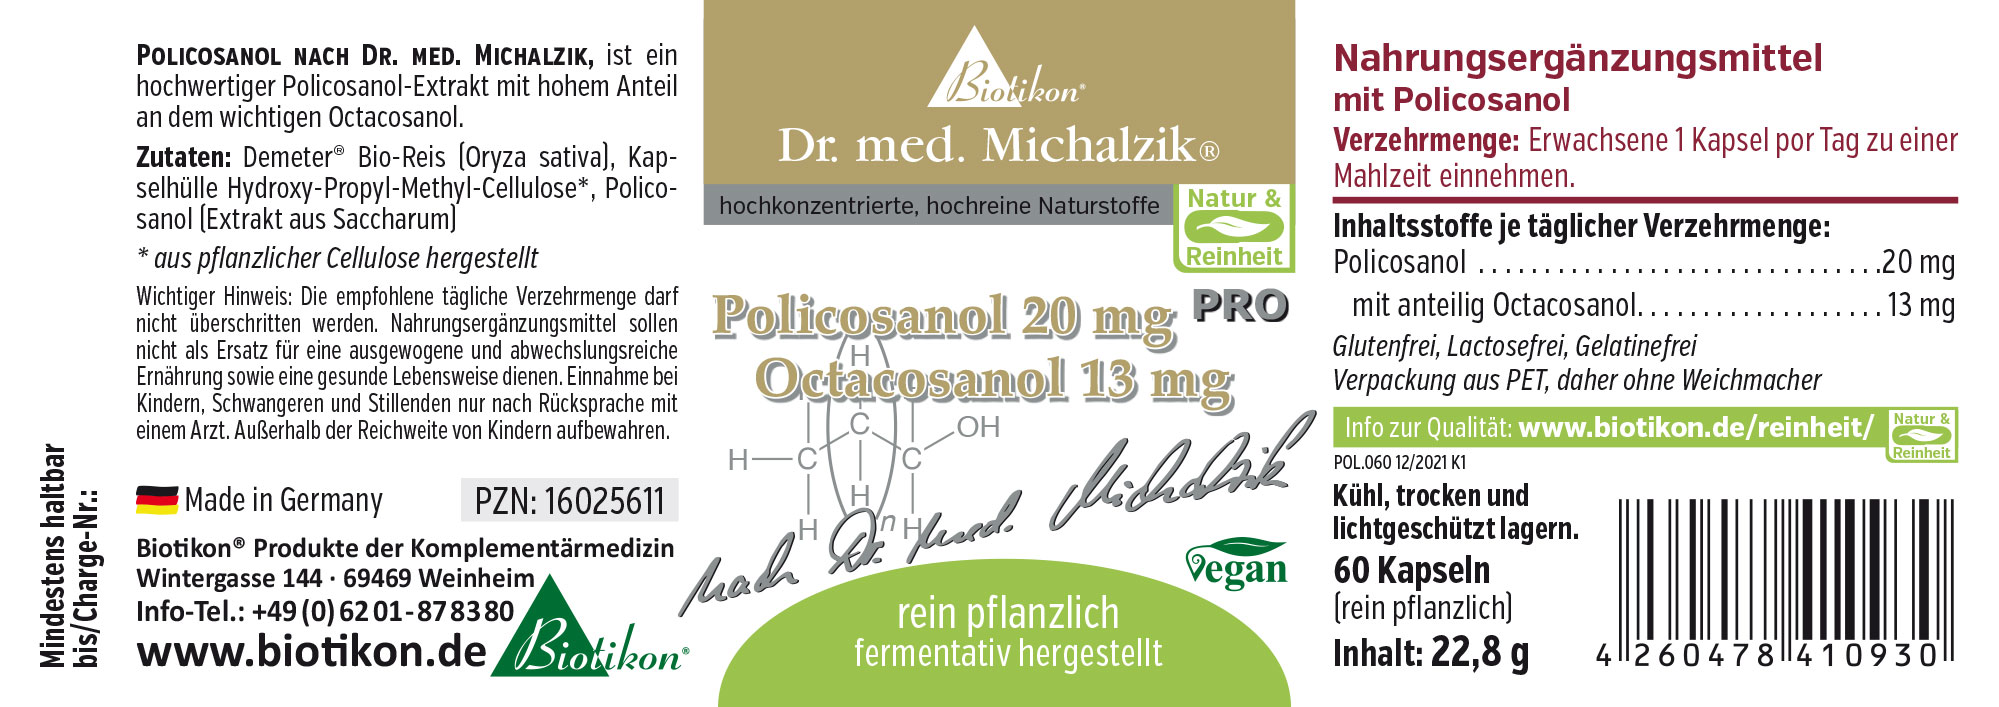 Policosanol 20 mg PRO Octacosanol 13 mg